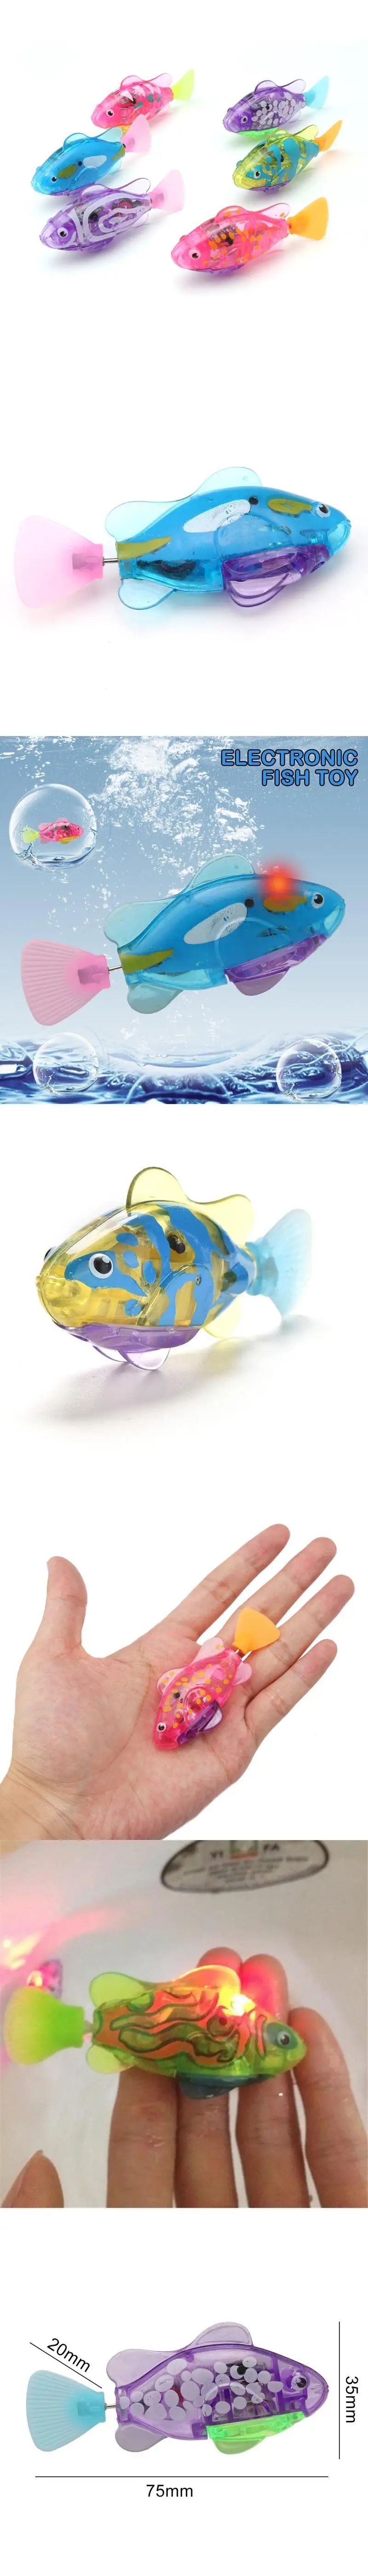 Электронная рыба Активированный батарея питание плавательная рыба игрушка Childen роботы Домашние животные подарок к празднику может плавает